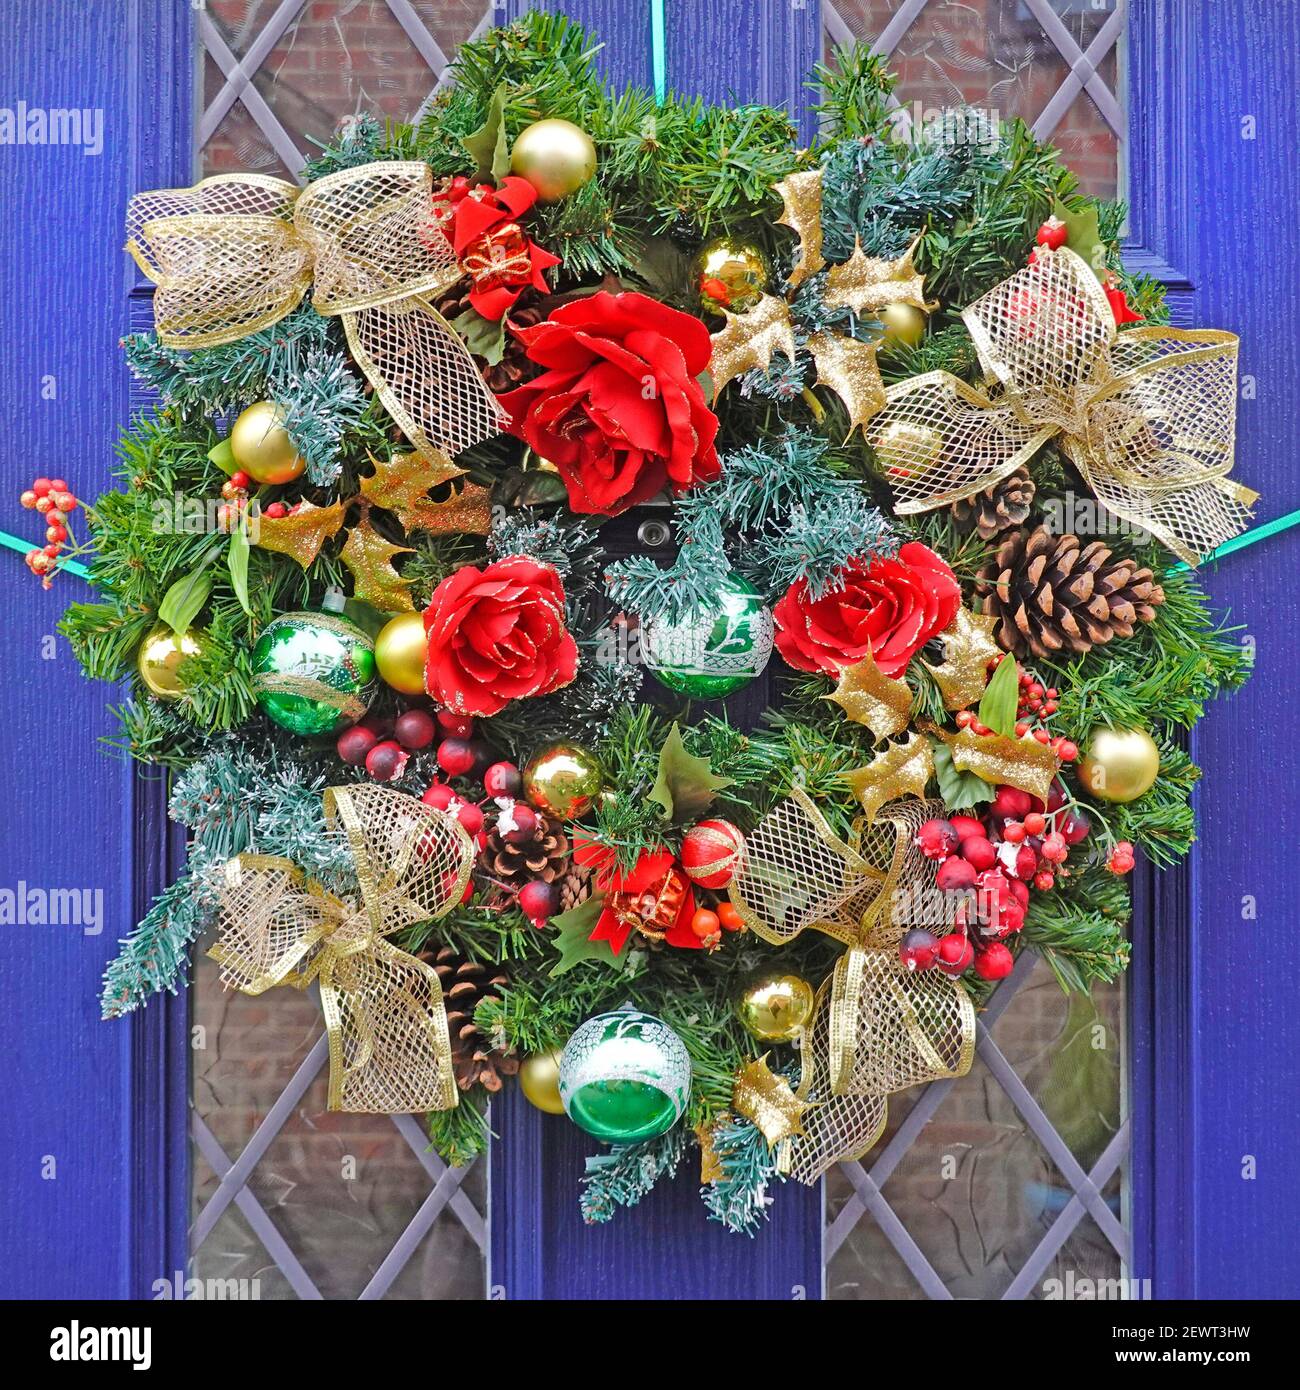 Gros plan de la porte avant de la maison bleue et de la couronne de Noël Avec des décorations de Noël y compris des boules de sapin cône ruban et Fleurs artificielles Angleterre Royaume-Uni Banque D'Images